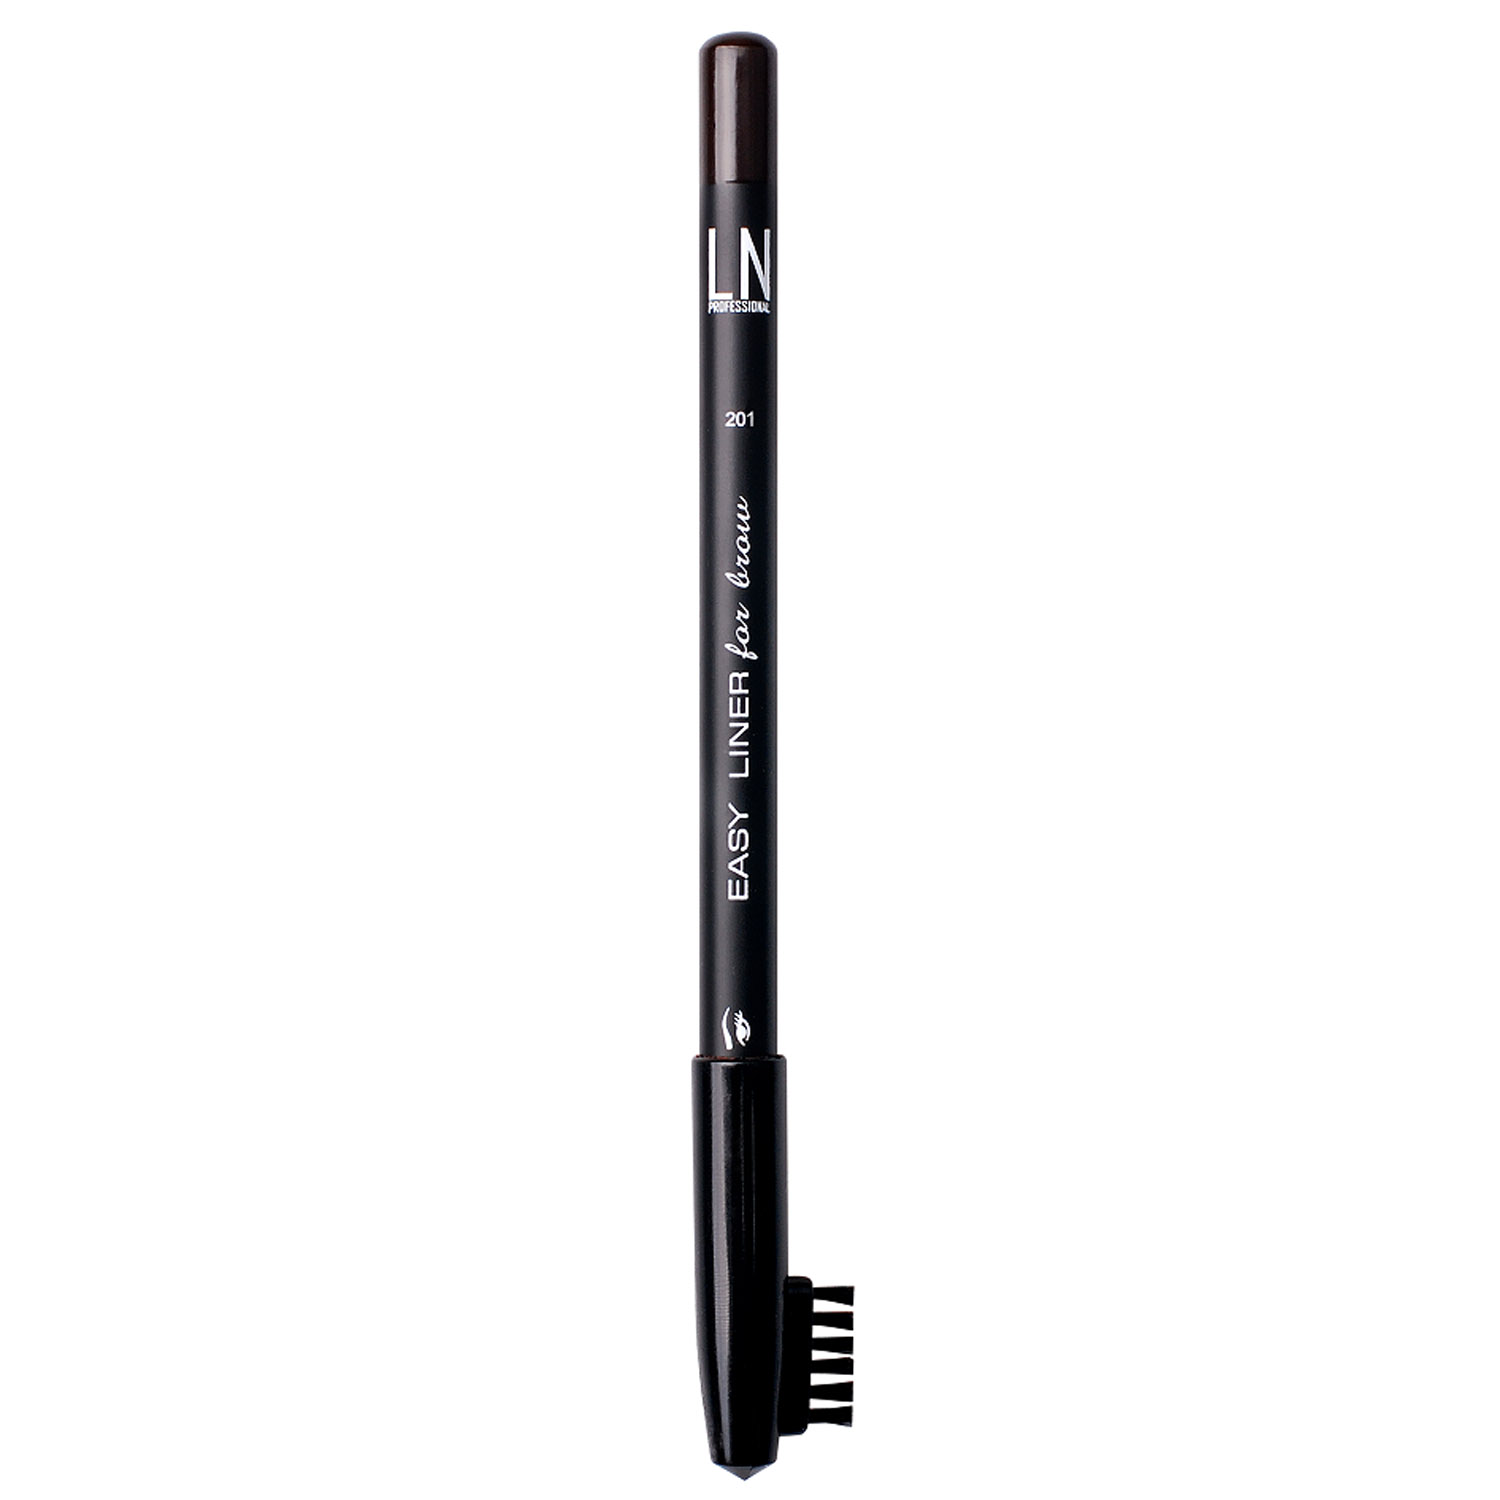 Олівець для брів LN Professional Easy Liner Brow Pencil тон 201, 1.7 г - фото 1